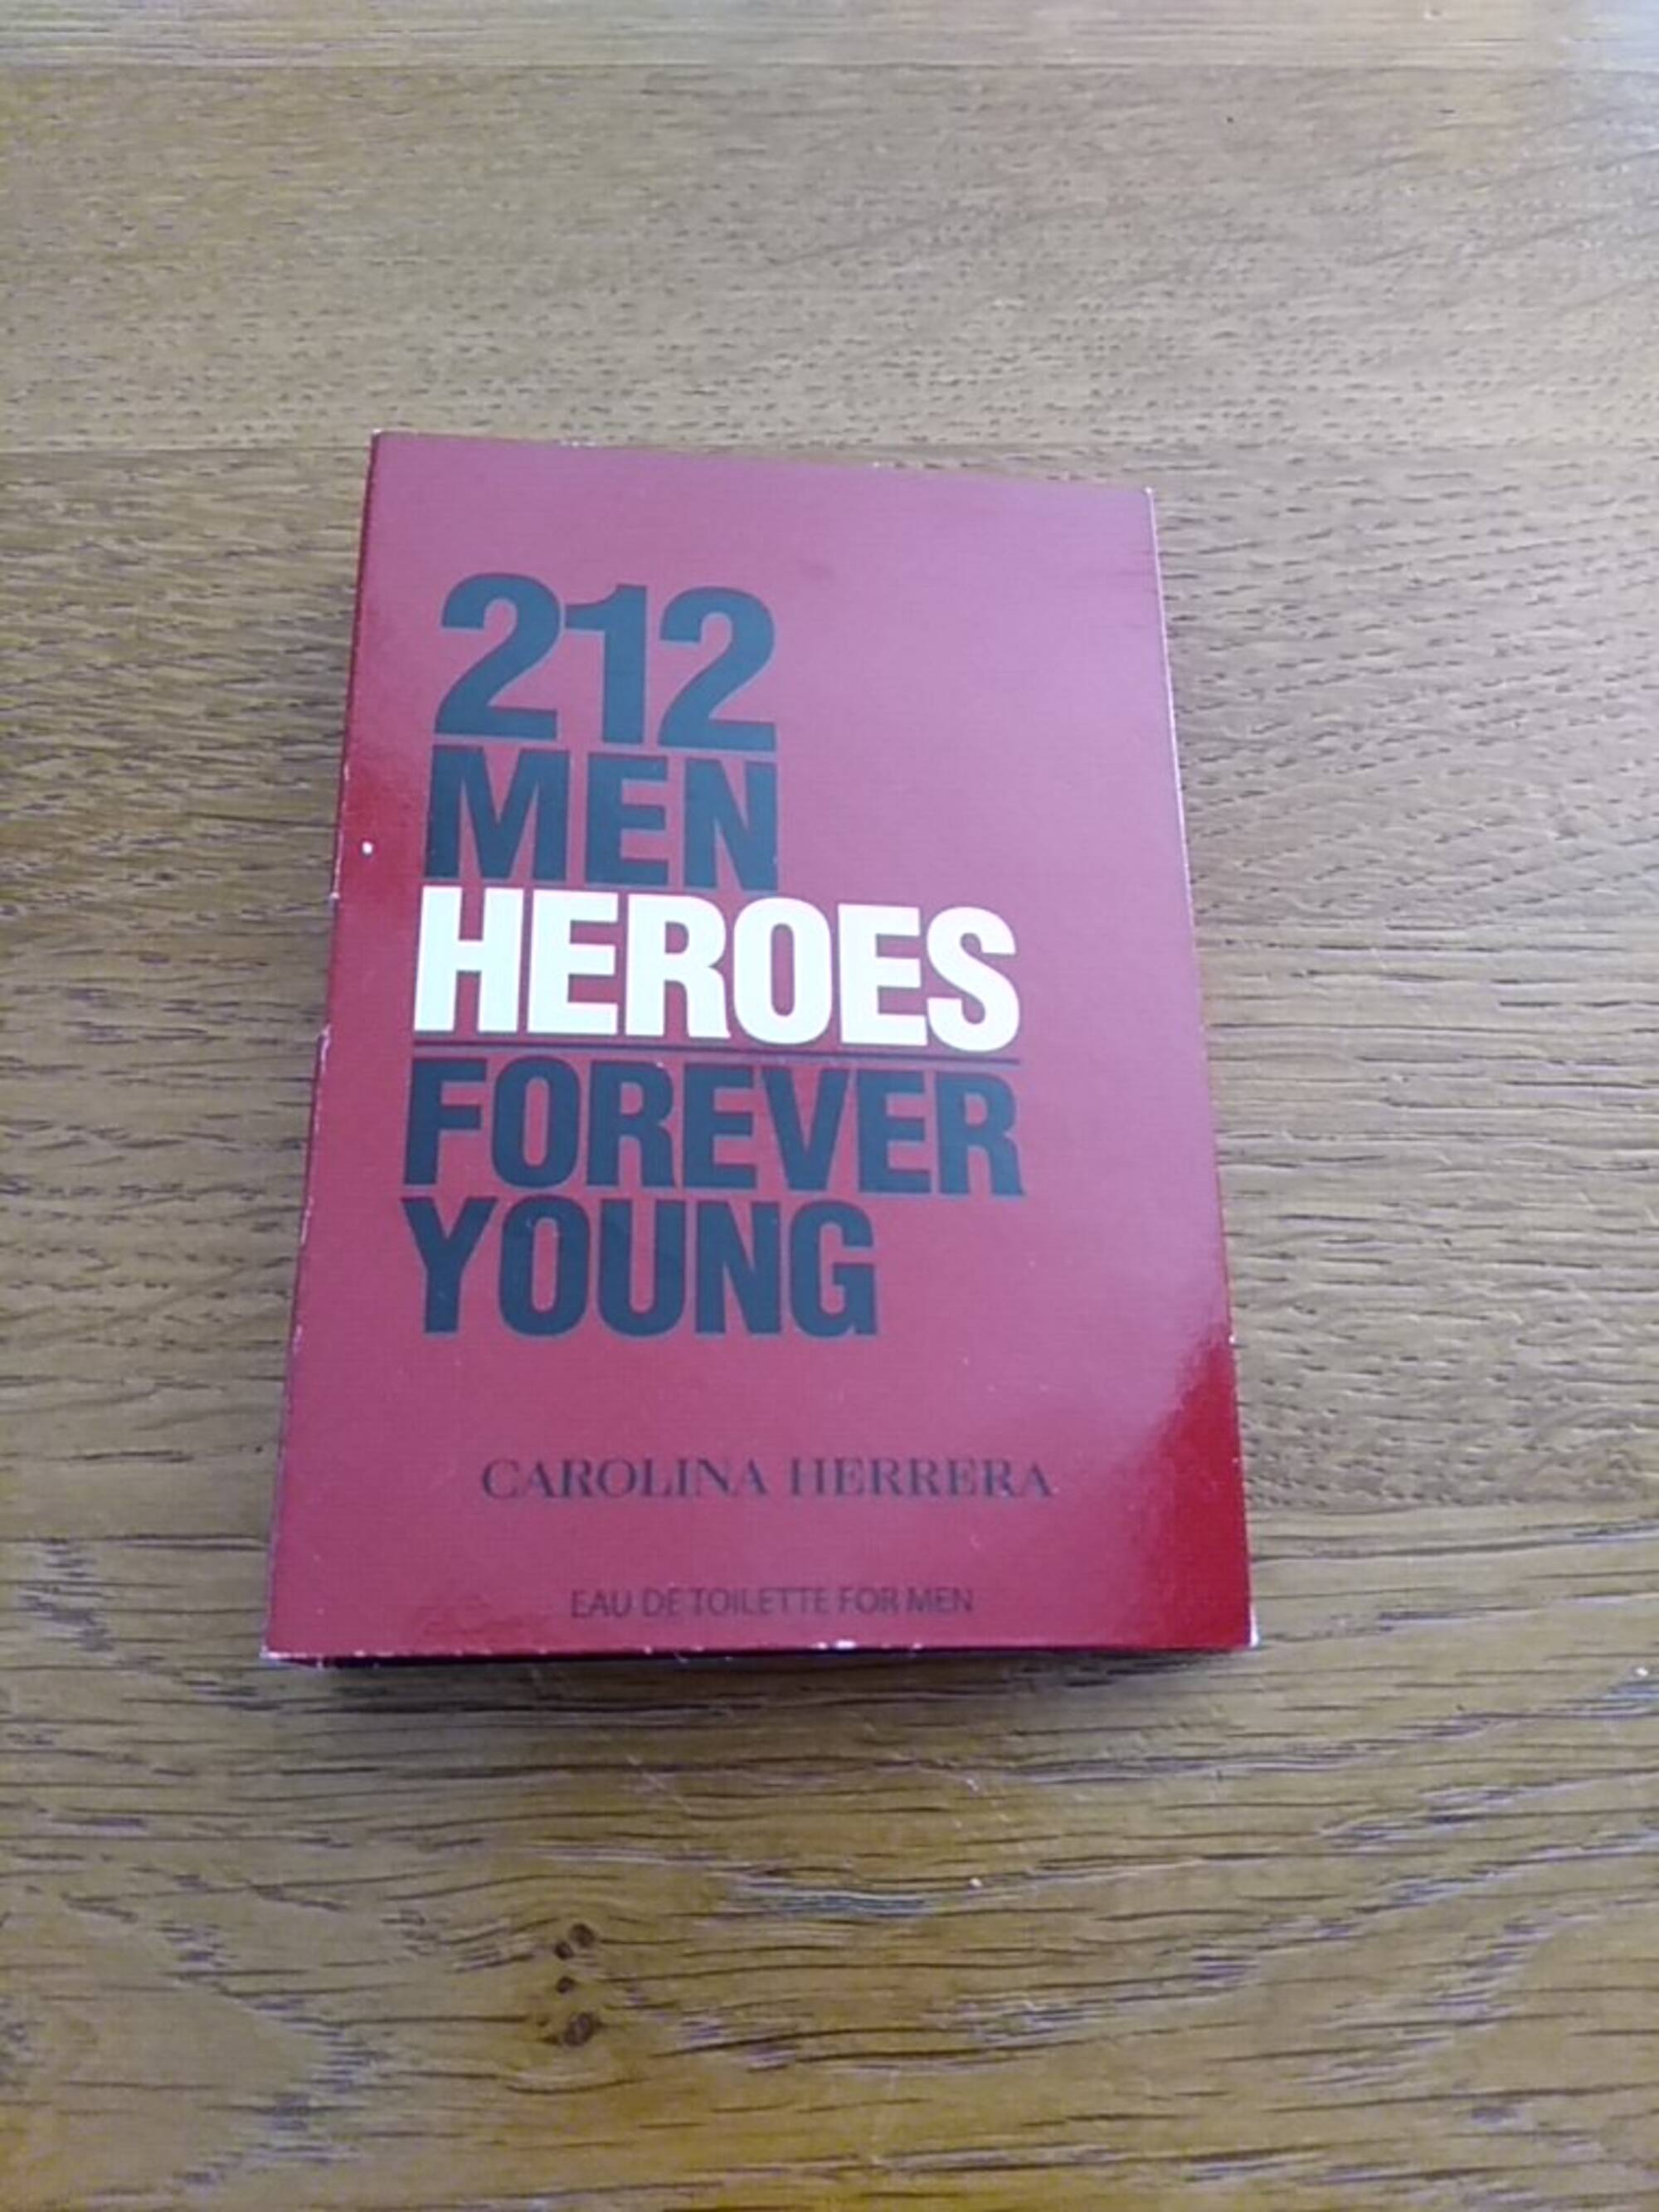 CAROLINA HERRERA - 212 men heroes forever young - Eau de toilette